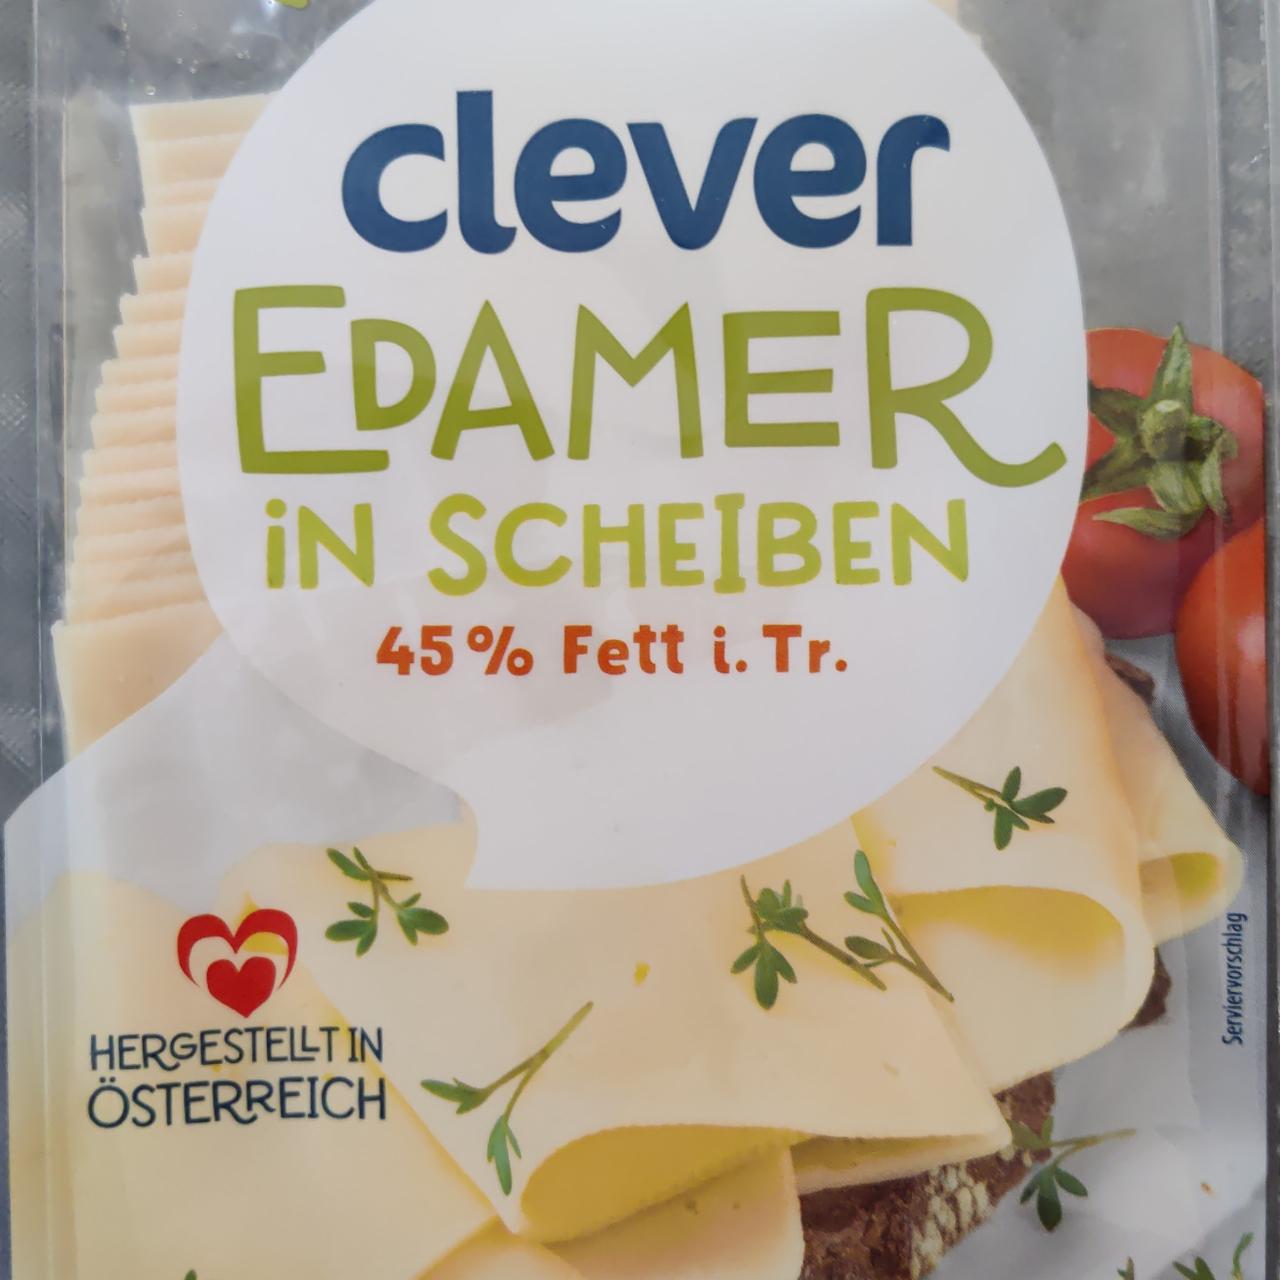 Fotografie - Edamer in Scheiben 45% Fett i.Tr. Clever